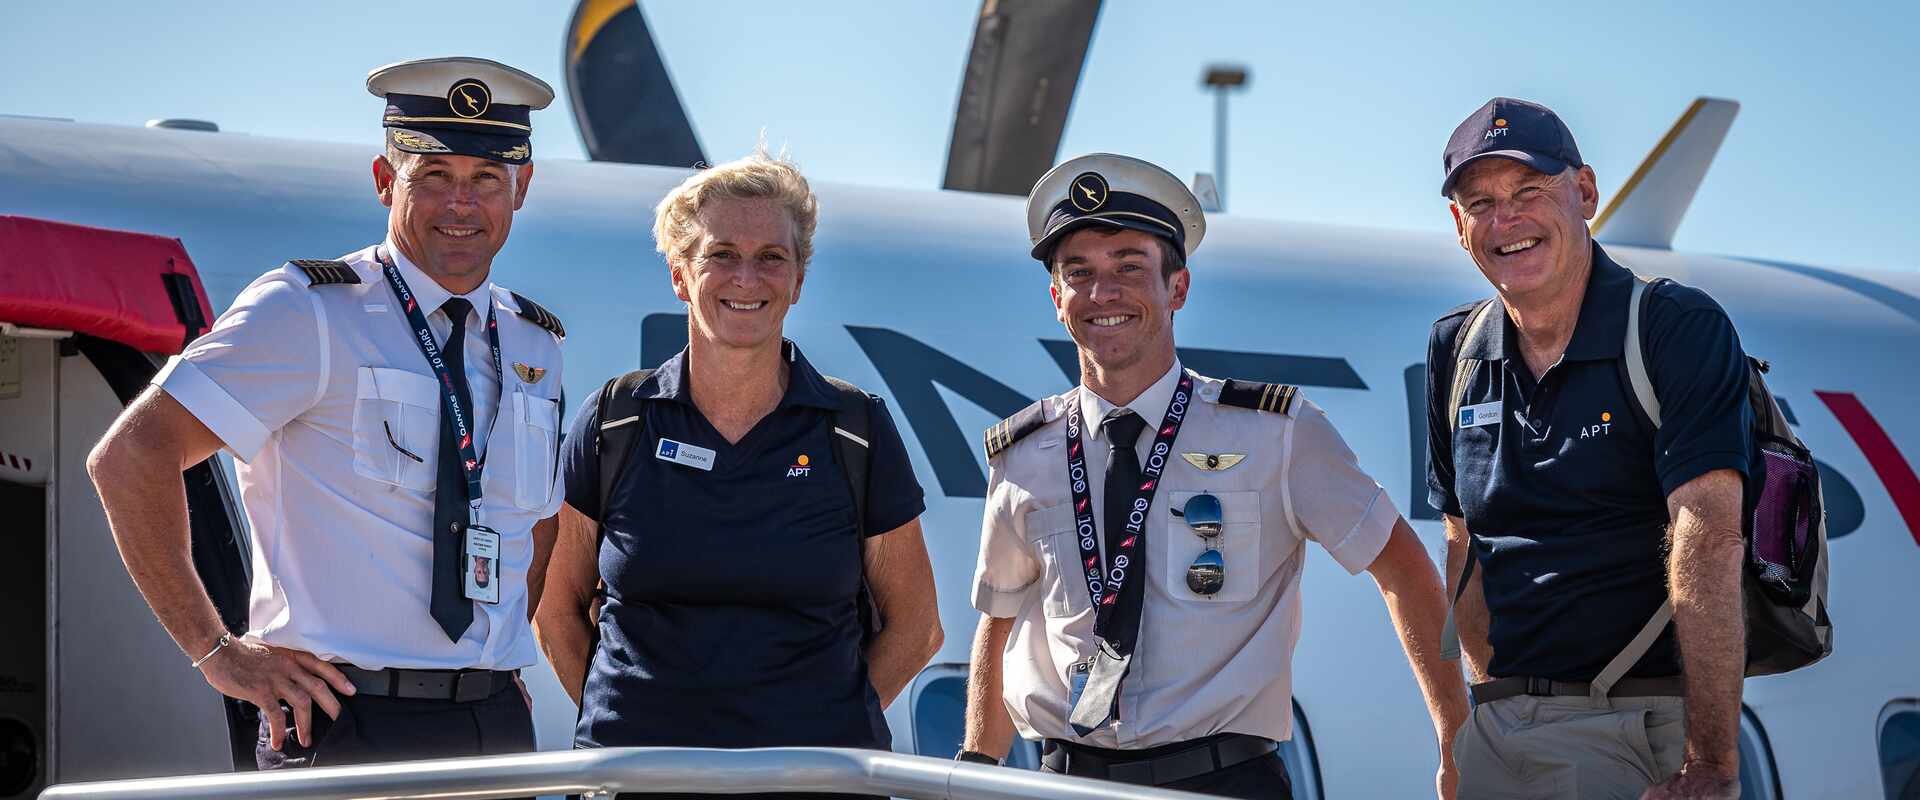 qld flight crew hostess guides boarding flight